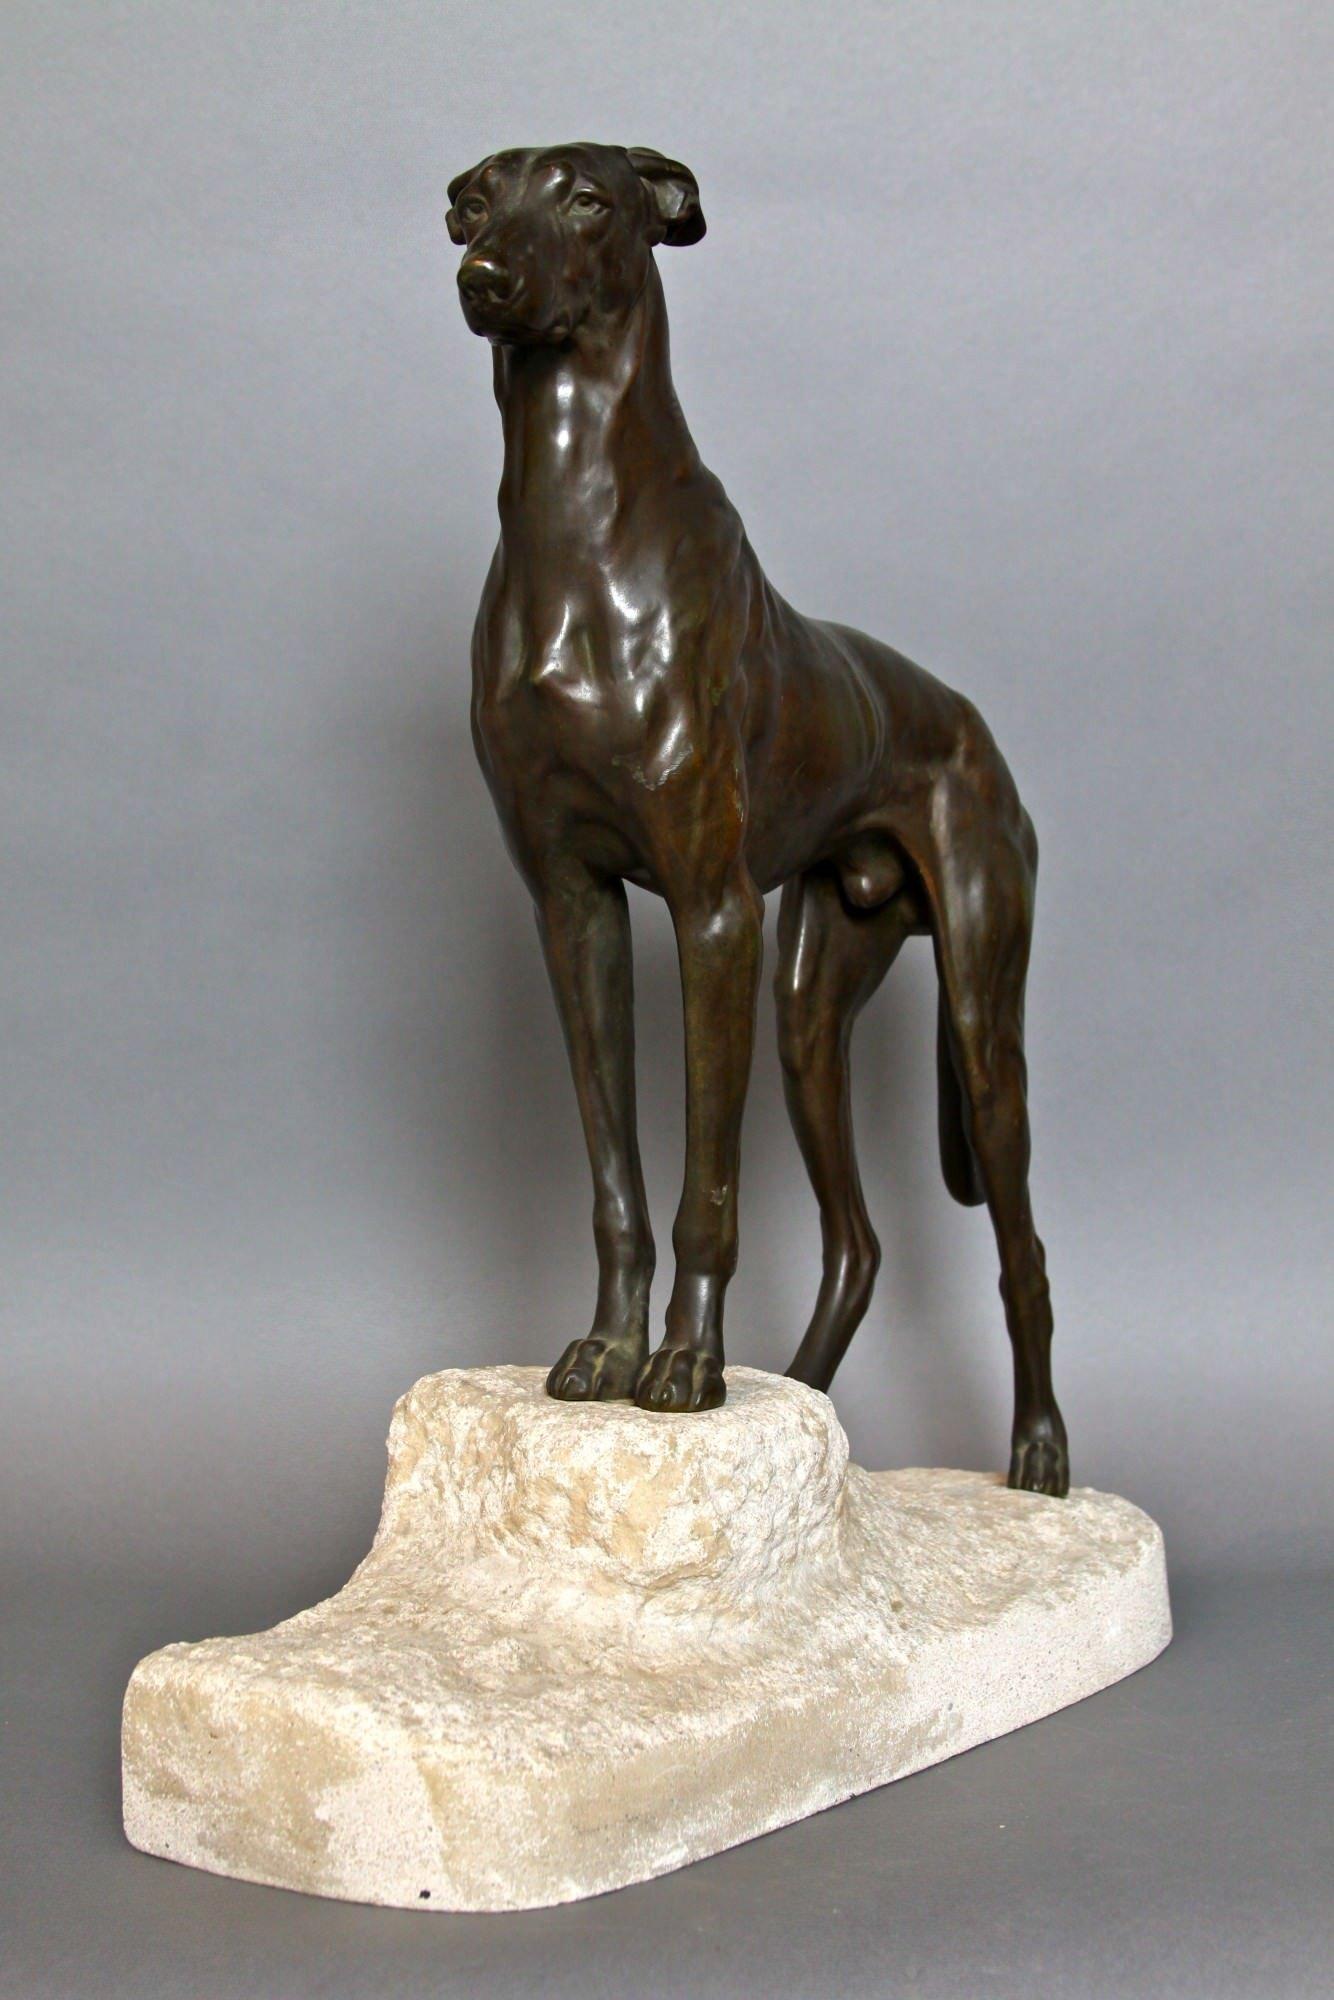 Jules Edmond Masson (Franzose, 1871-1932)
Bronzefigur eines Lurcher-Hundes, 1930
Bronze mit bräunlich-grüner Patina, auf Steinsockel montiert
Auf dem Sockel befindet sich eine Bronzeplakette mit der Aufschrift 